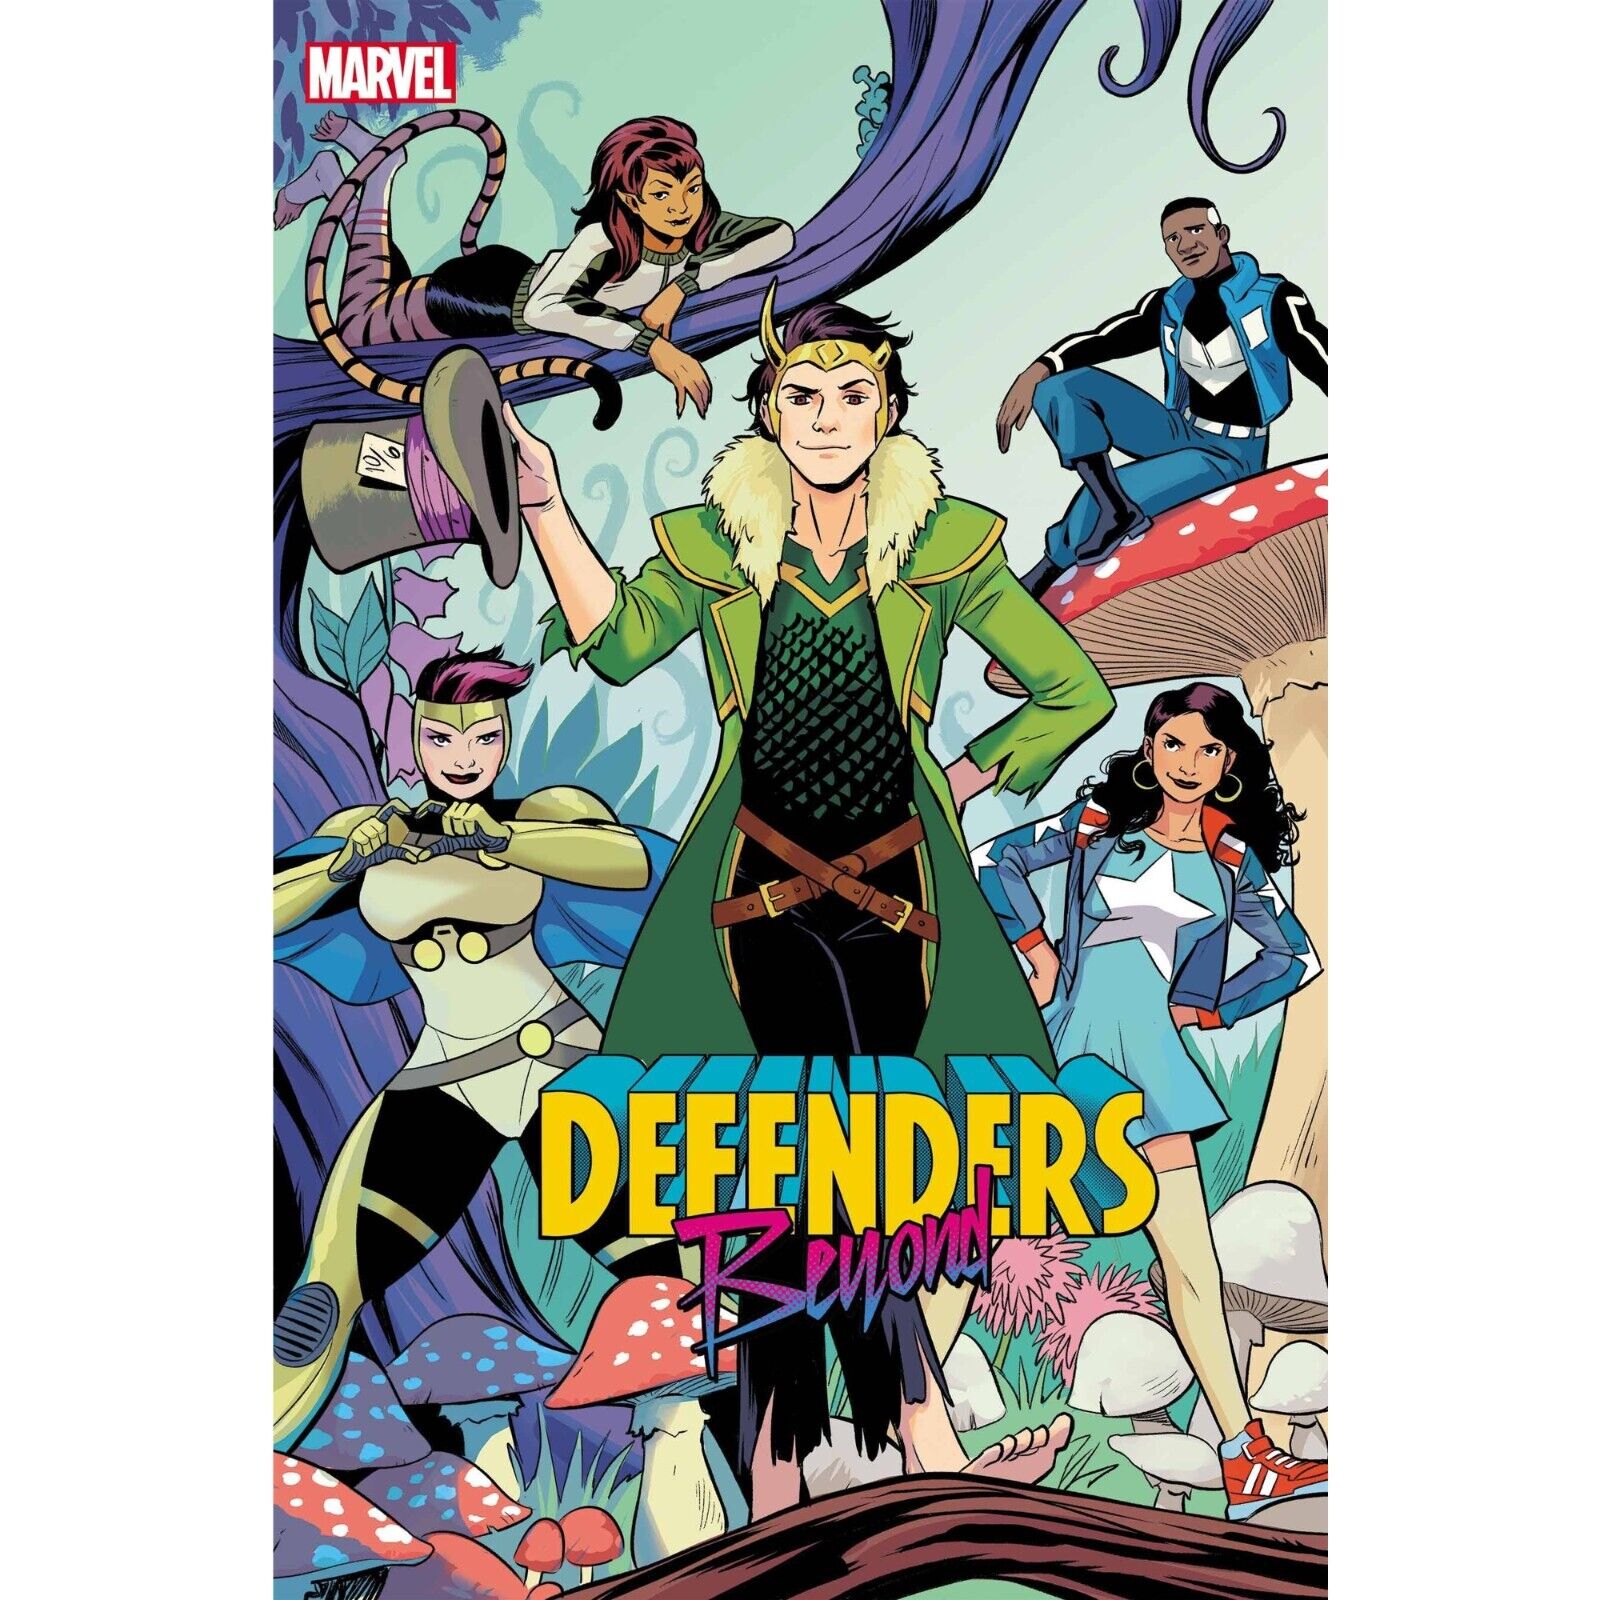 Defenders Beyond (2022) 1 2 3 4 5 | Marvel Comics | FULL RUN / COVER SELECT